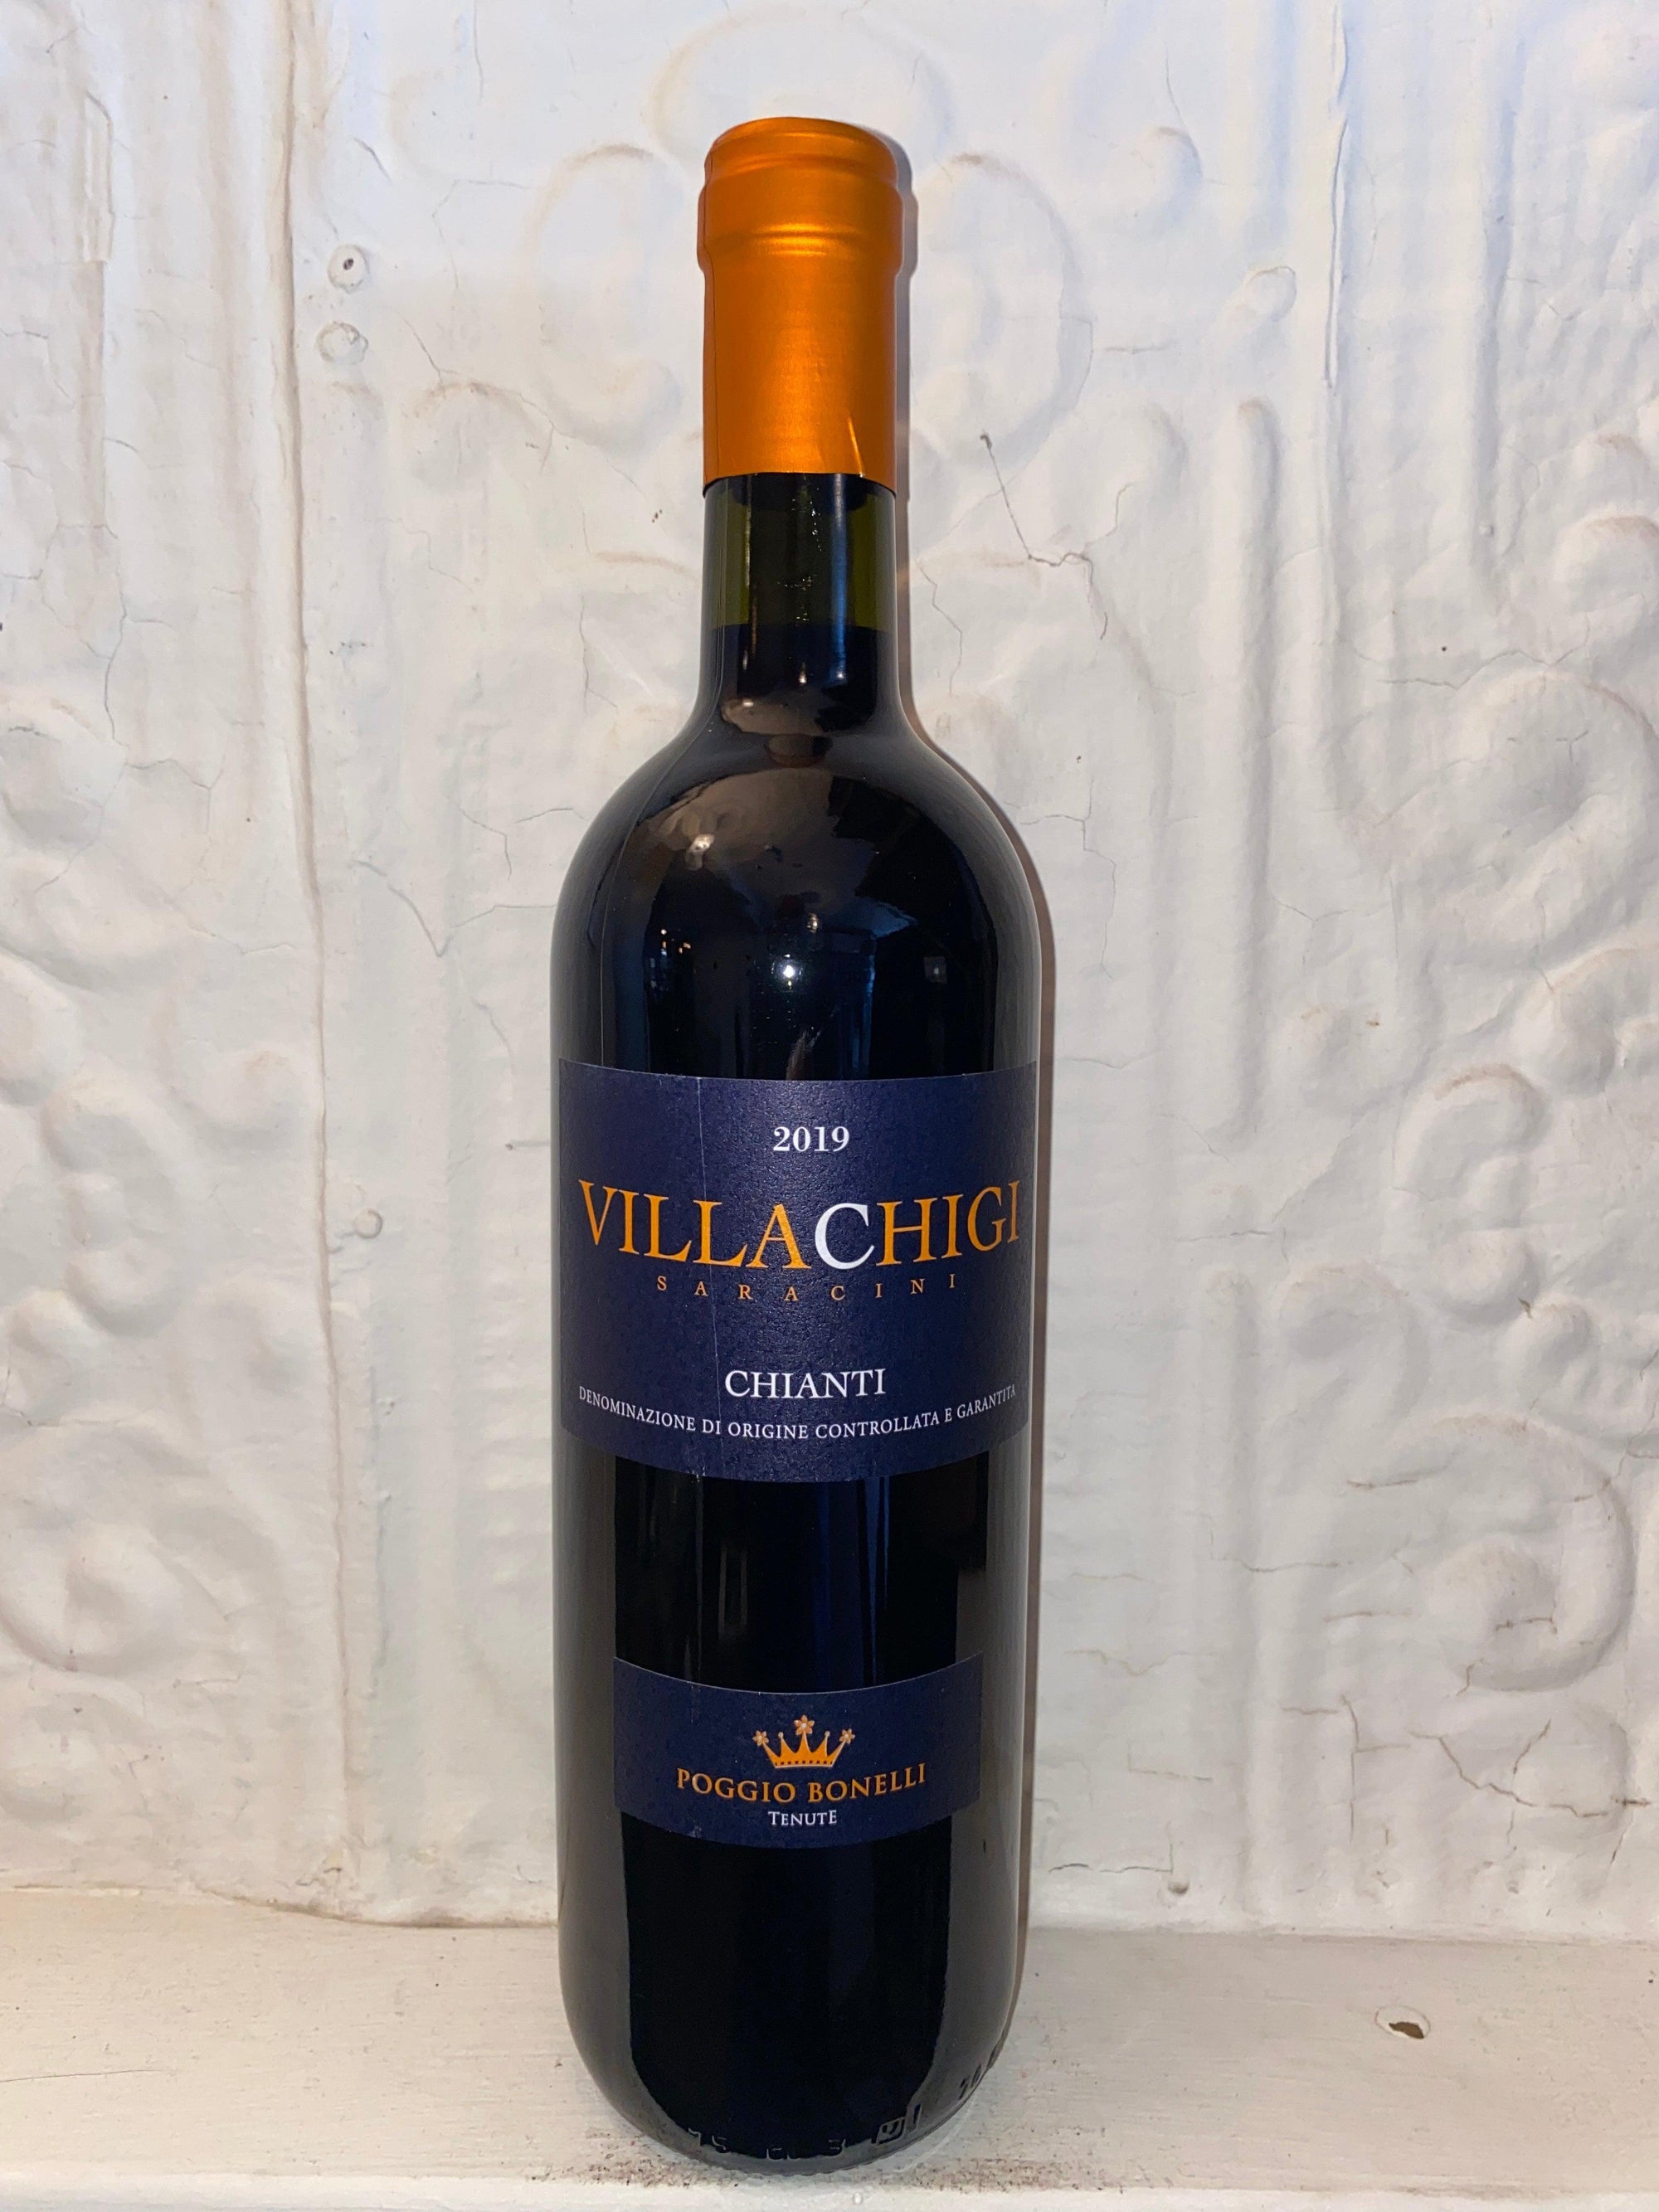 Villa Chigi Chianti, Poggio Bonelli 2019 (Tuscany, Italy)-Wine-Bibber & Bell